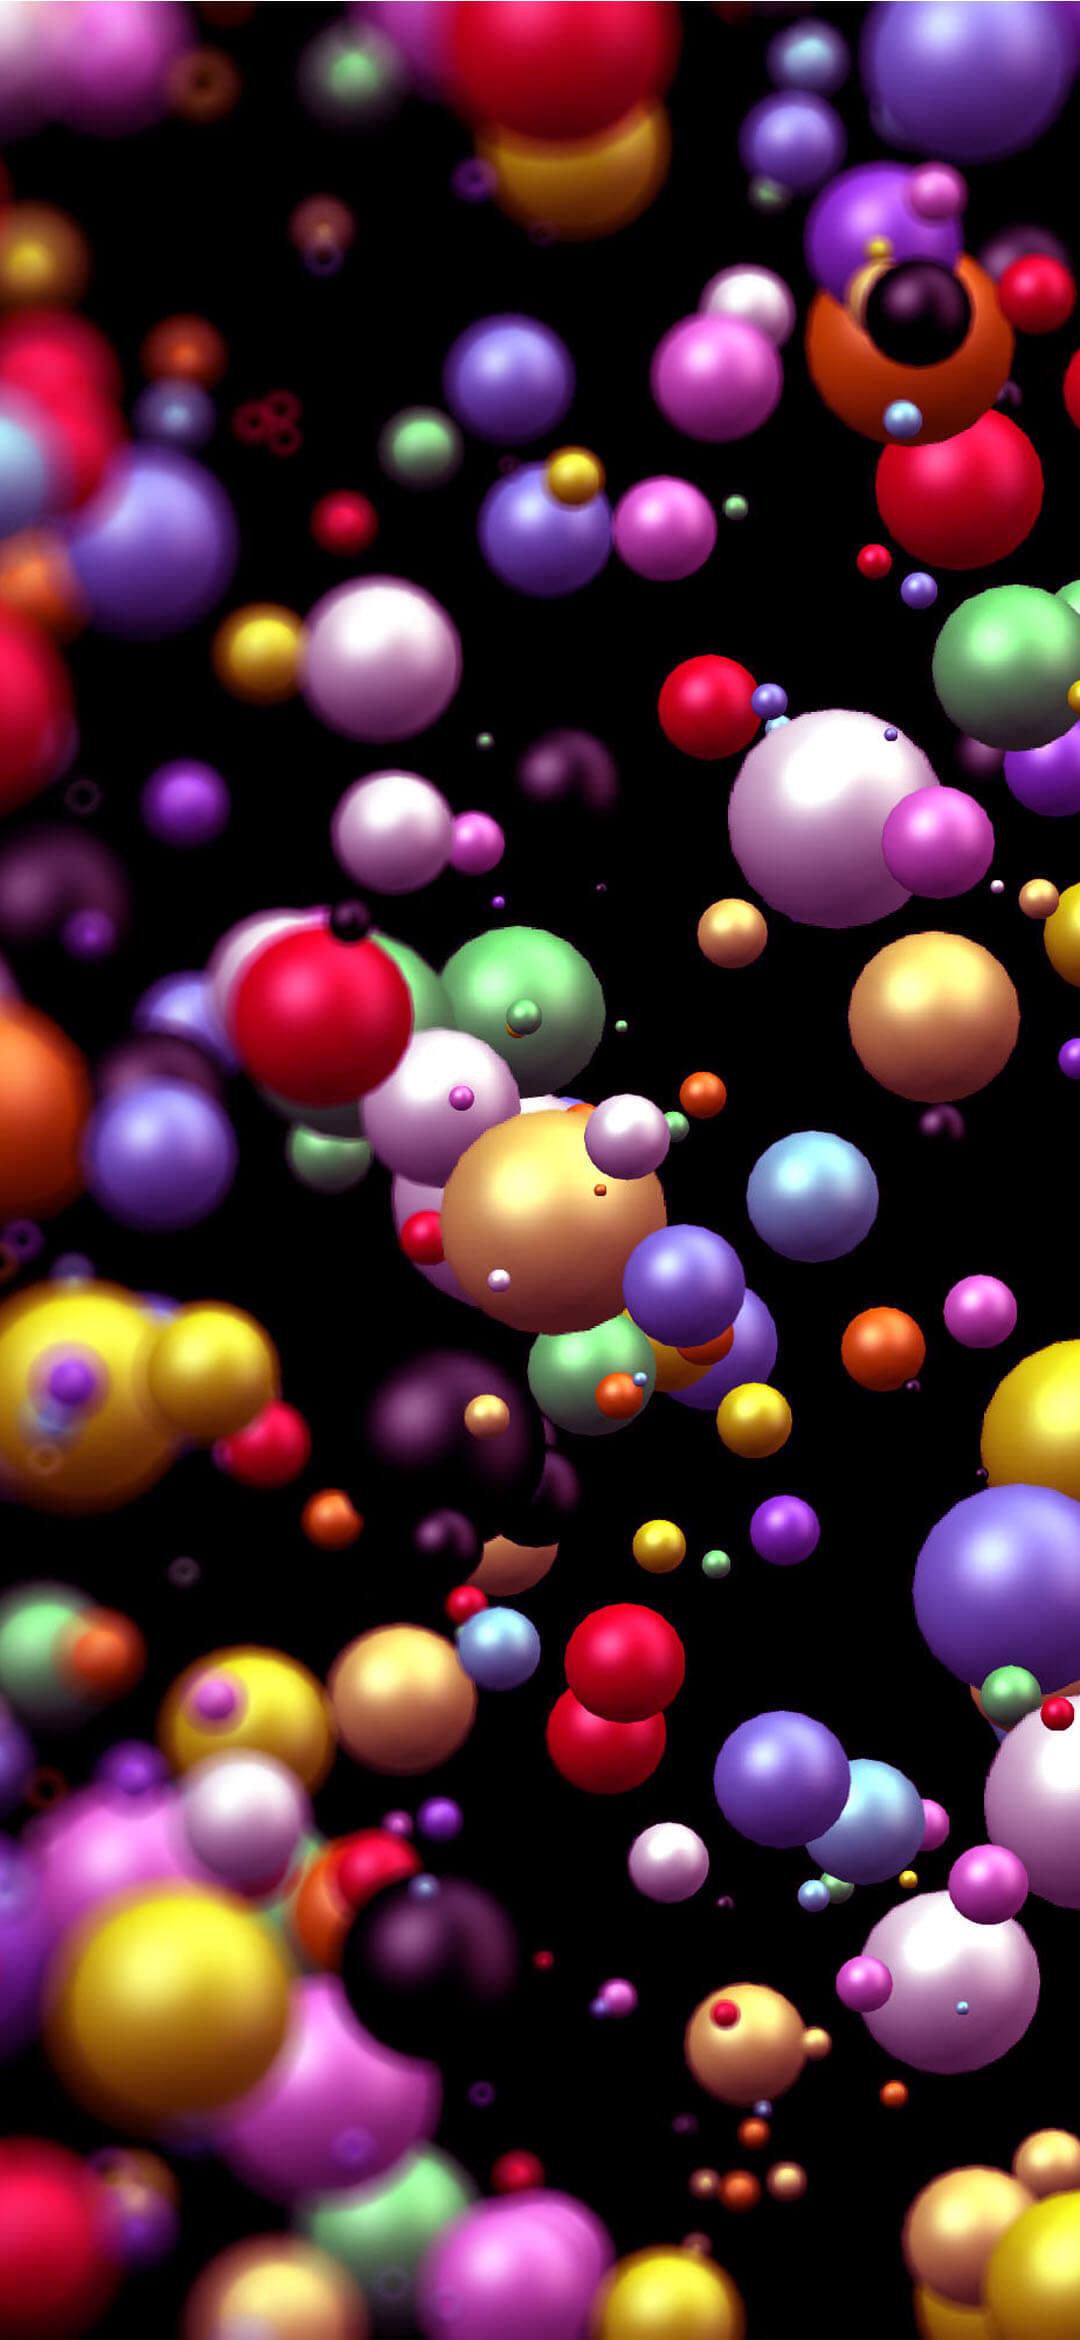 Abstract Color Balls HQ Wallpaper [1080x2340]